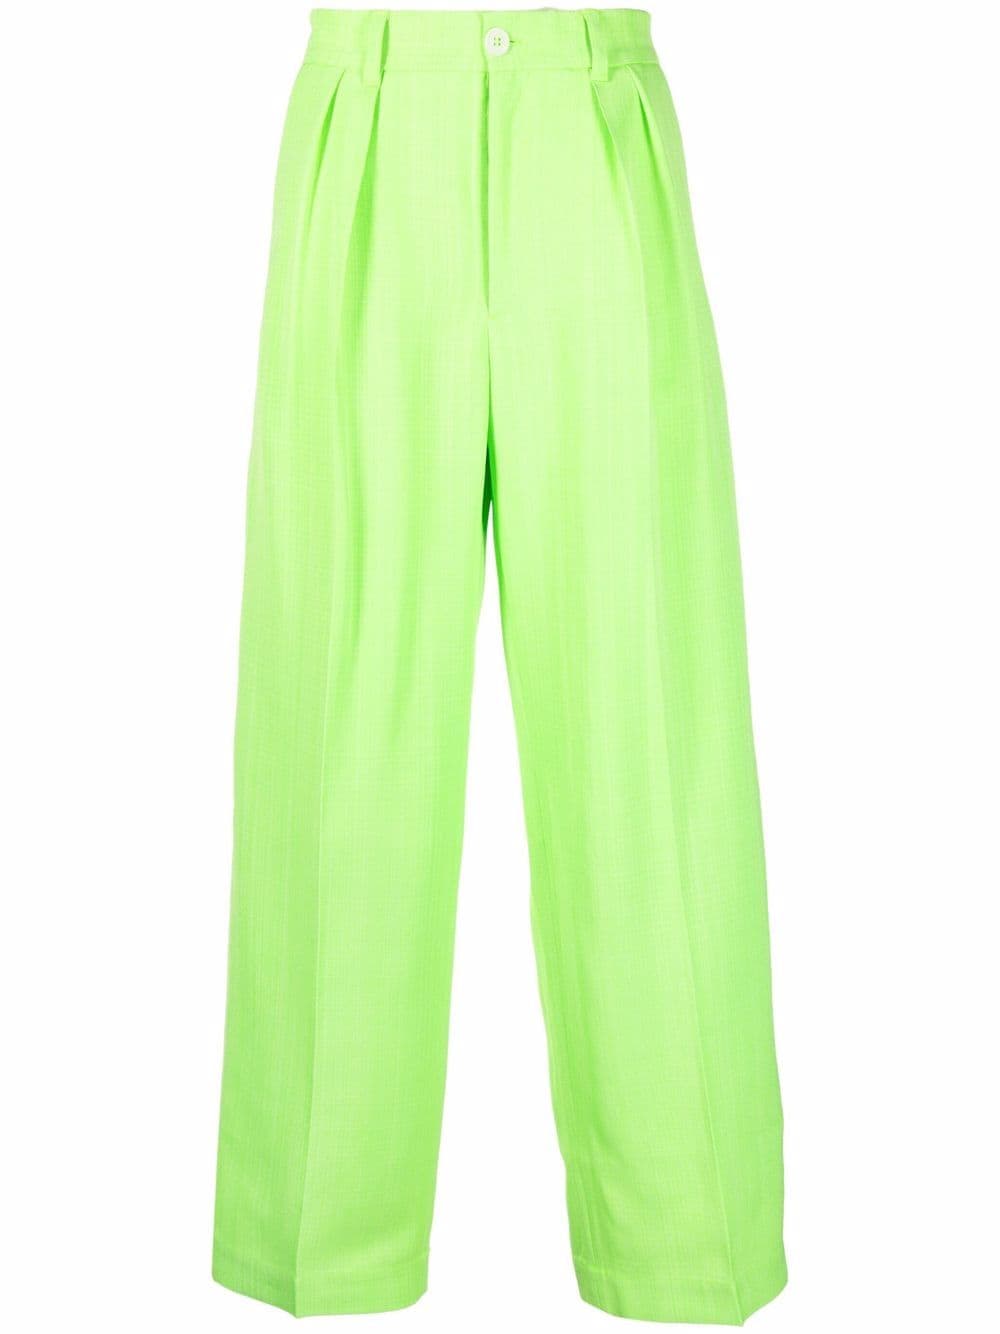 Jacquemus Le Pantalon Mela wide-leg trousers - Green von Jacquemus